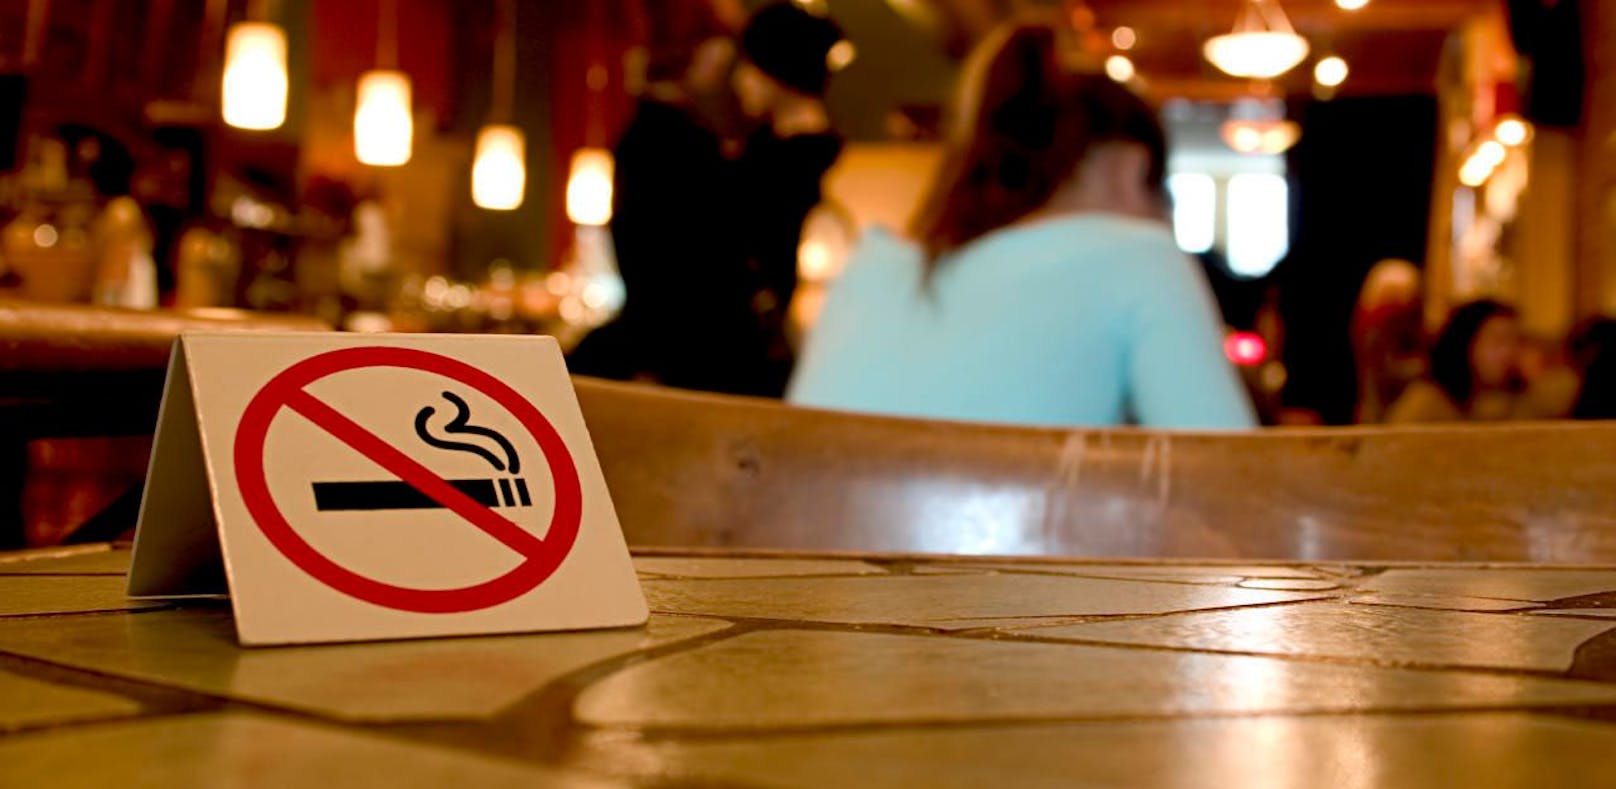 Von den 20 untersuchten Raucher/Nichtraucher-Mischlokalen wurden in 14 Gaststätten signifikante und starke Feinstaubübertritte im Nichtraucherbereich aufgedeckt.